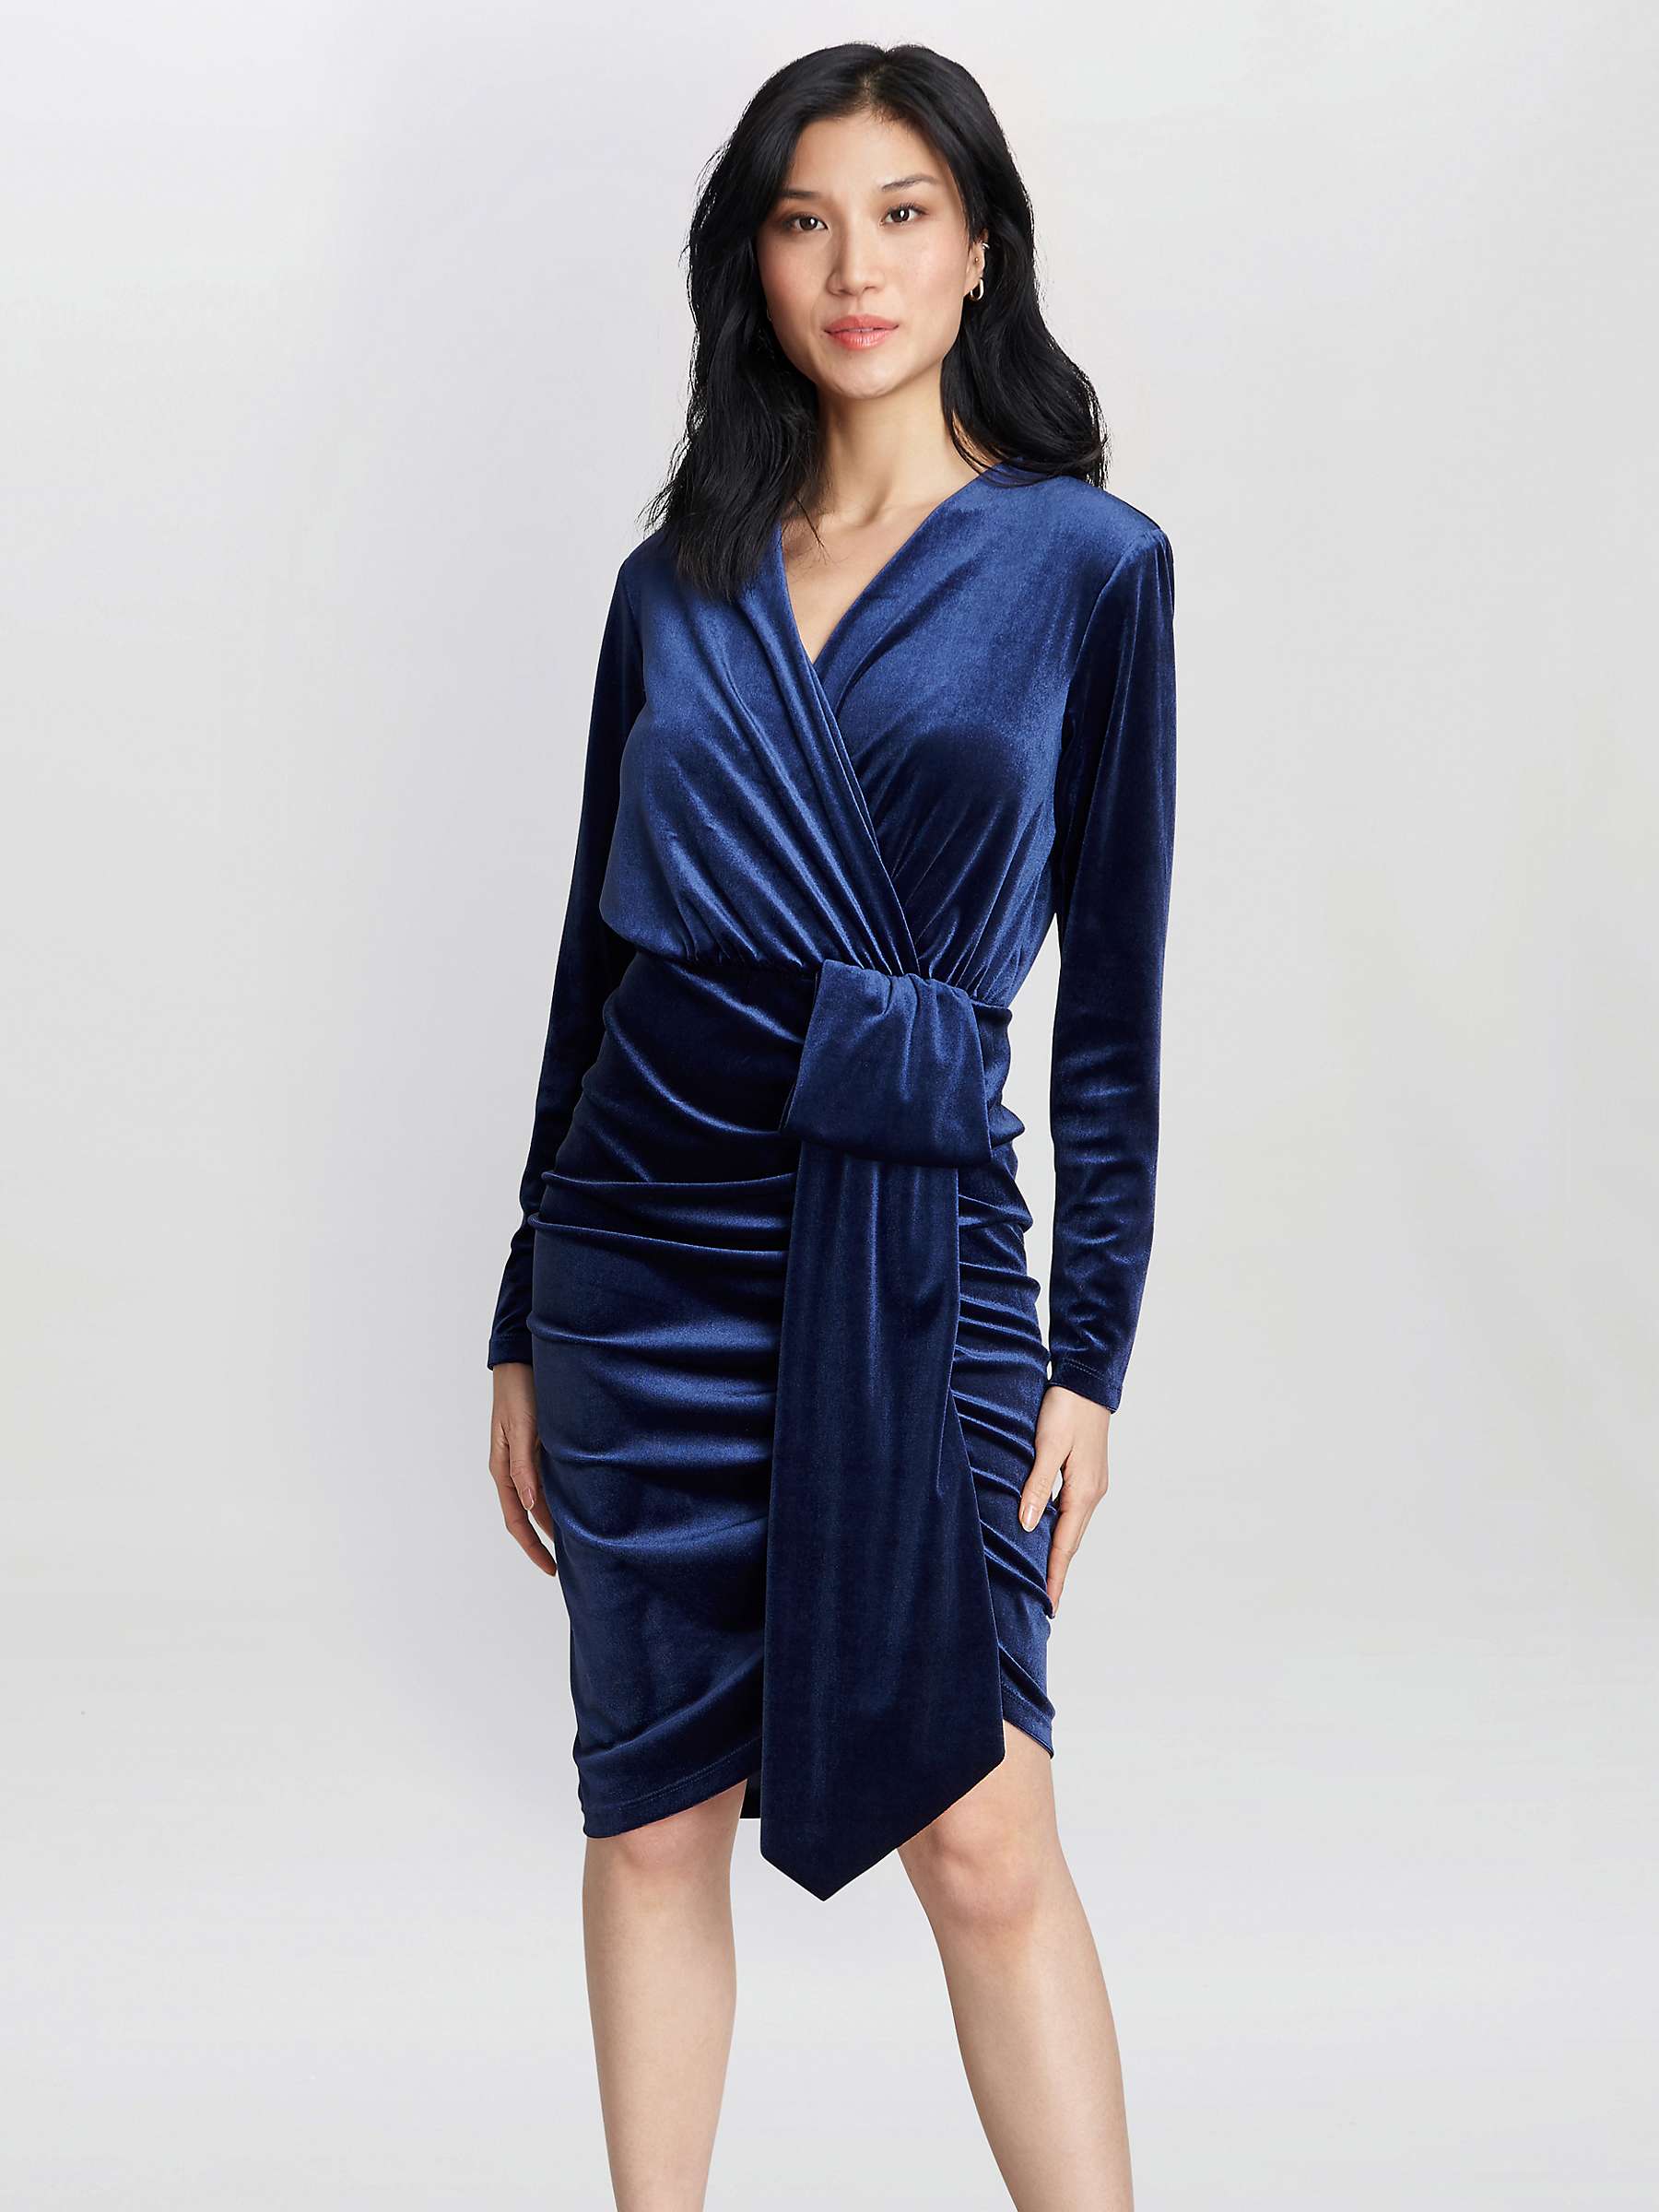 Buy Gina Bacconi Tasha Bow Detail Velvet Dress, Navy Online at johnlewis.com